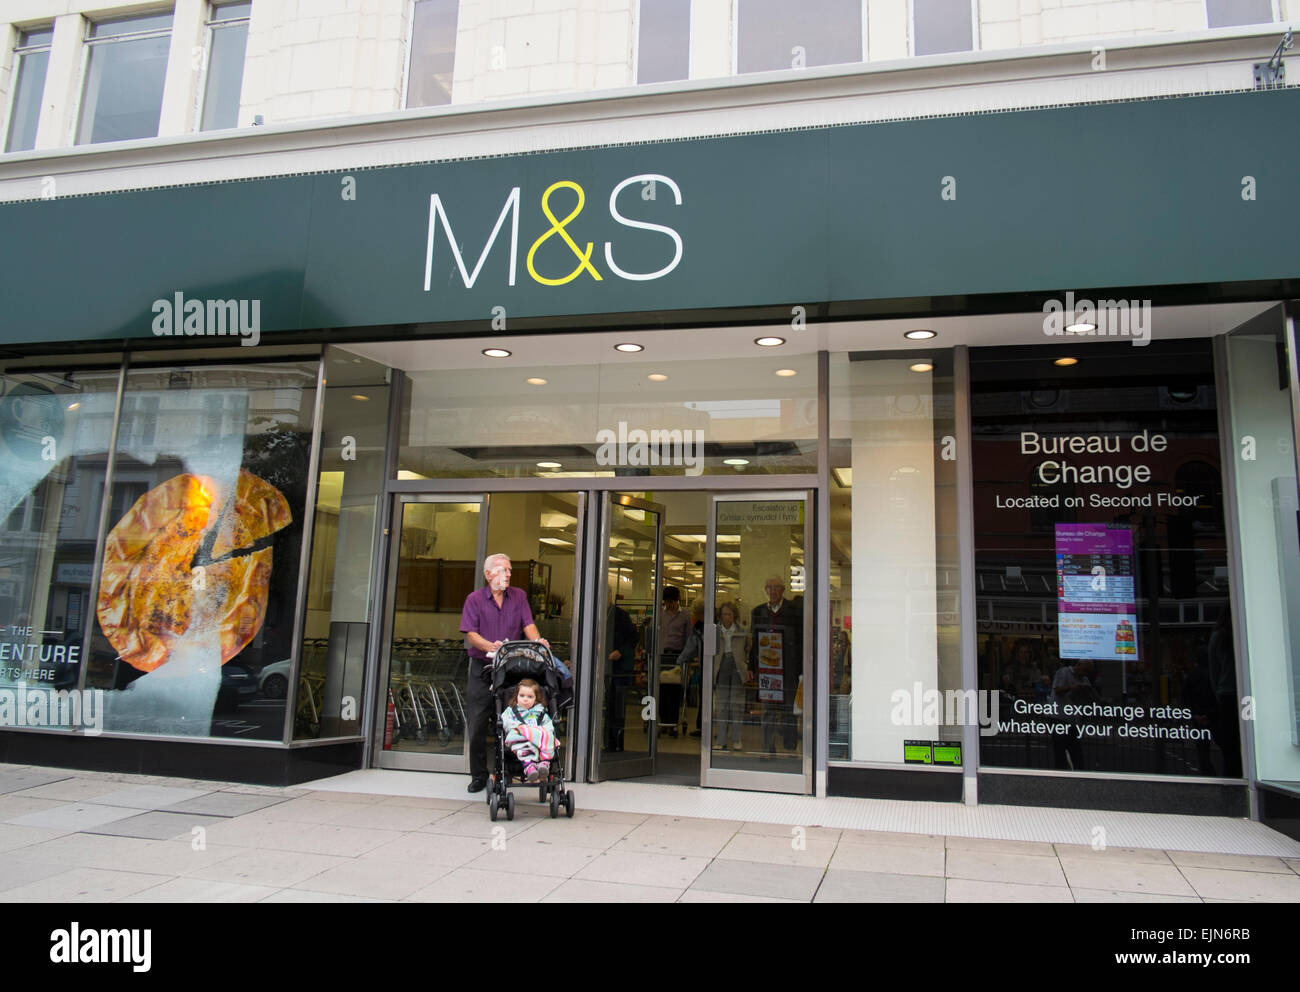 Un homme Senior citizen avec bébé en poussette laisse un magasin Marks and Spencer à Llandudno, au Pays de Galles, Royaume-Uni Banque D'Images